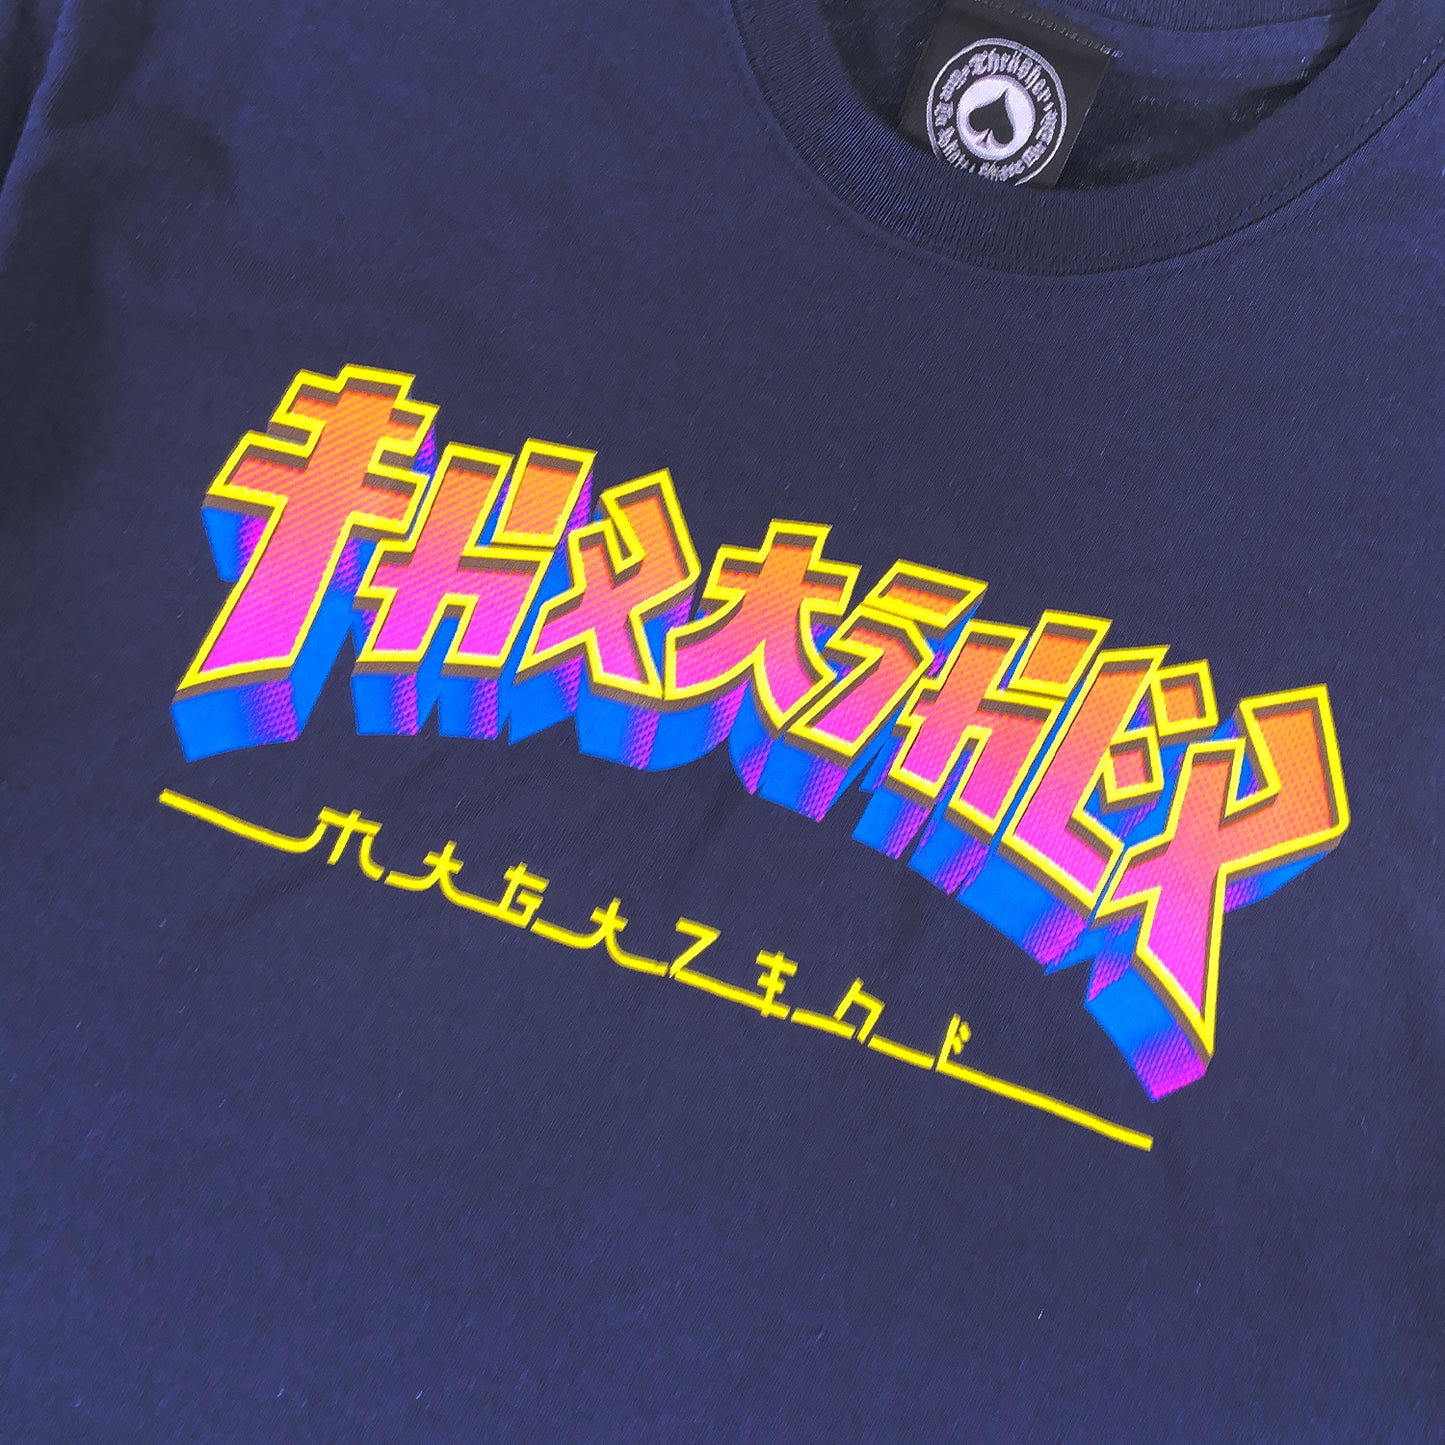 Thrasher - Godzilla Logo - T Shirt - Navy - Prime Delux Store